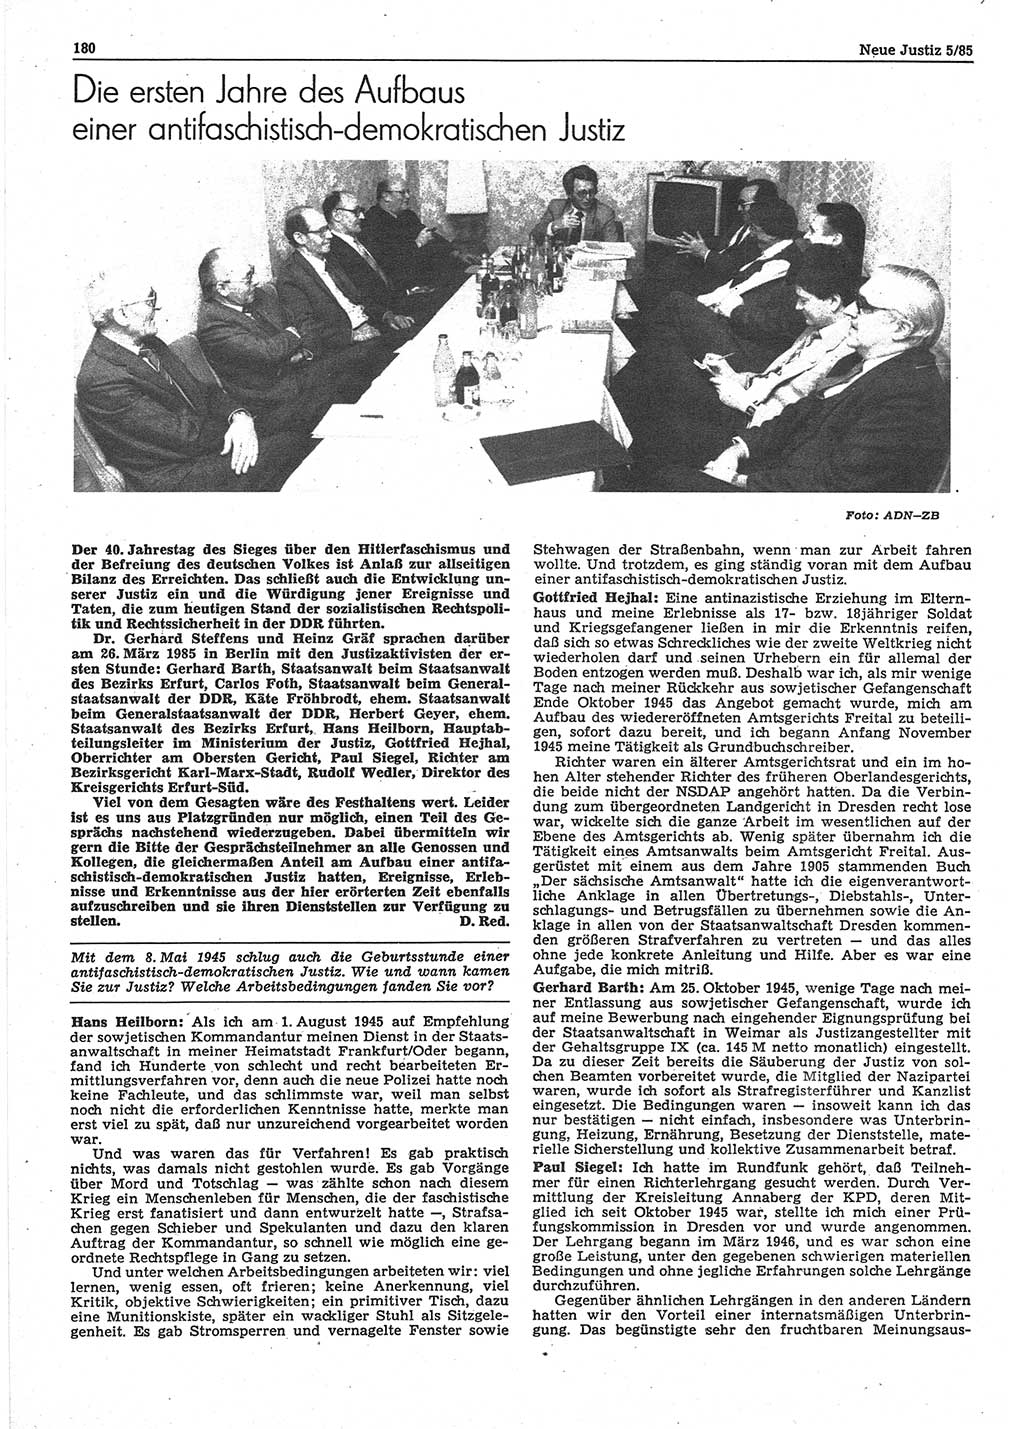 Neue Justiz (NJ), Zeitschrift für sozialistisches Recht und Gesetzlichkeit [Deutsche Demokratische Republik (DDR)], 39. Jahrgang 1985, Seite 180 (NJ DDR 1985, S. 180)